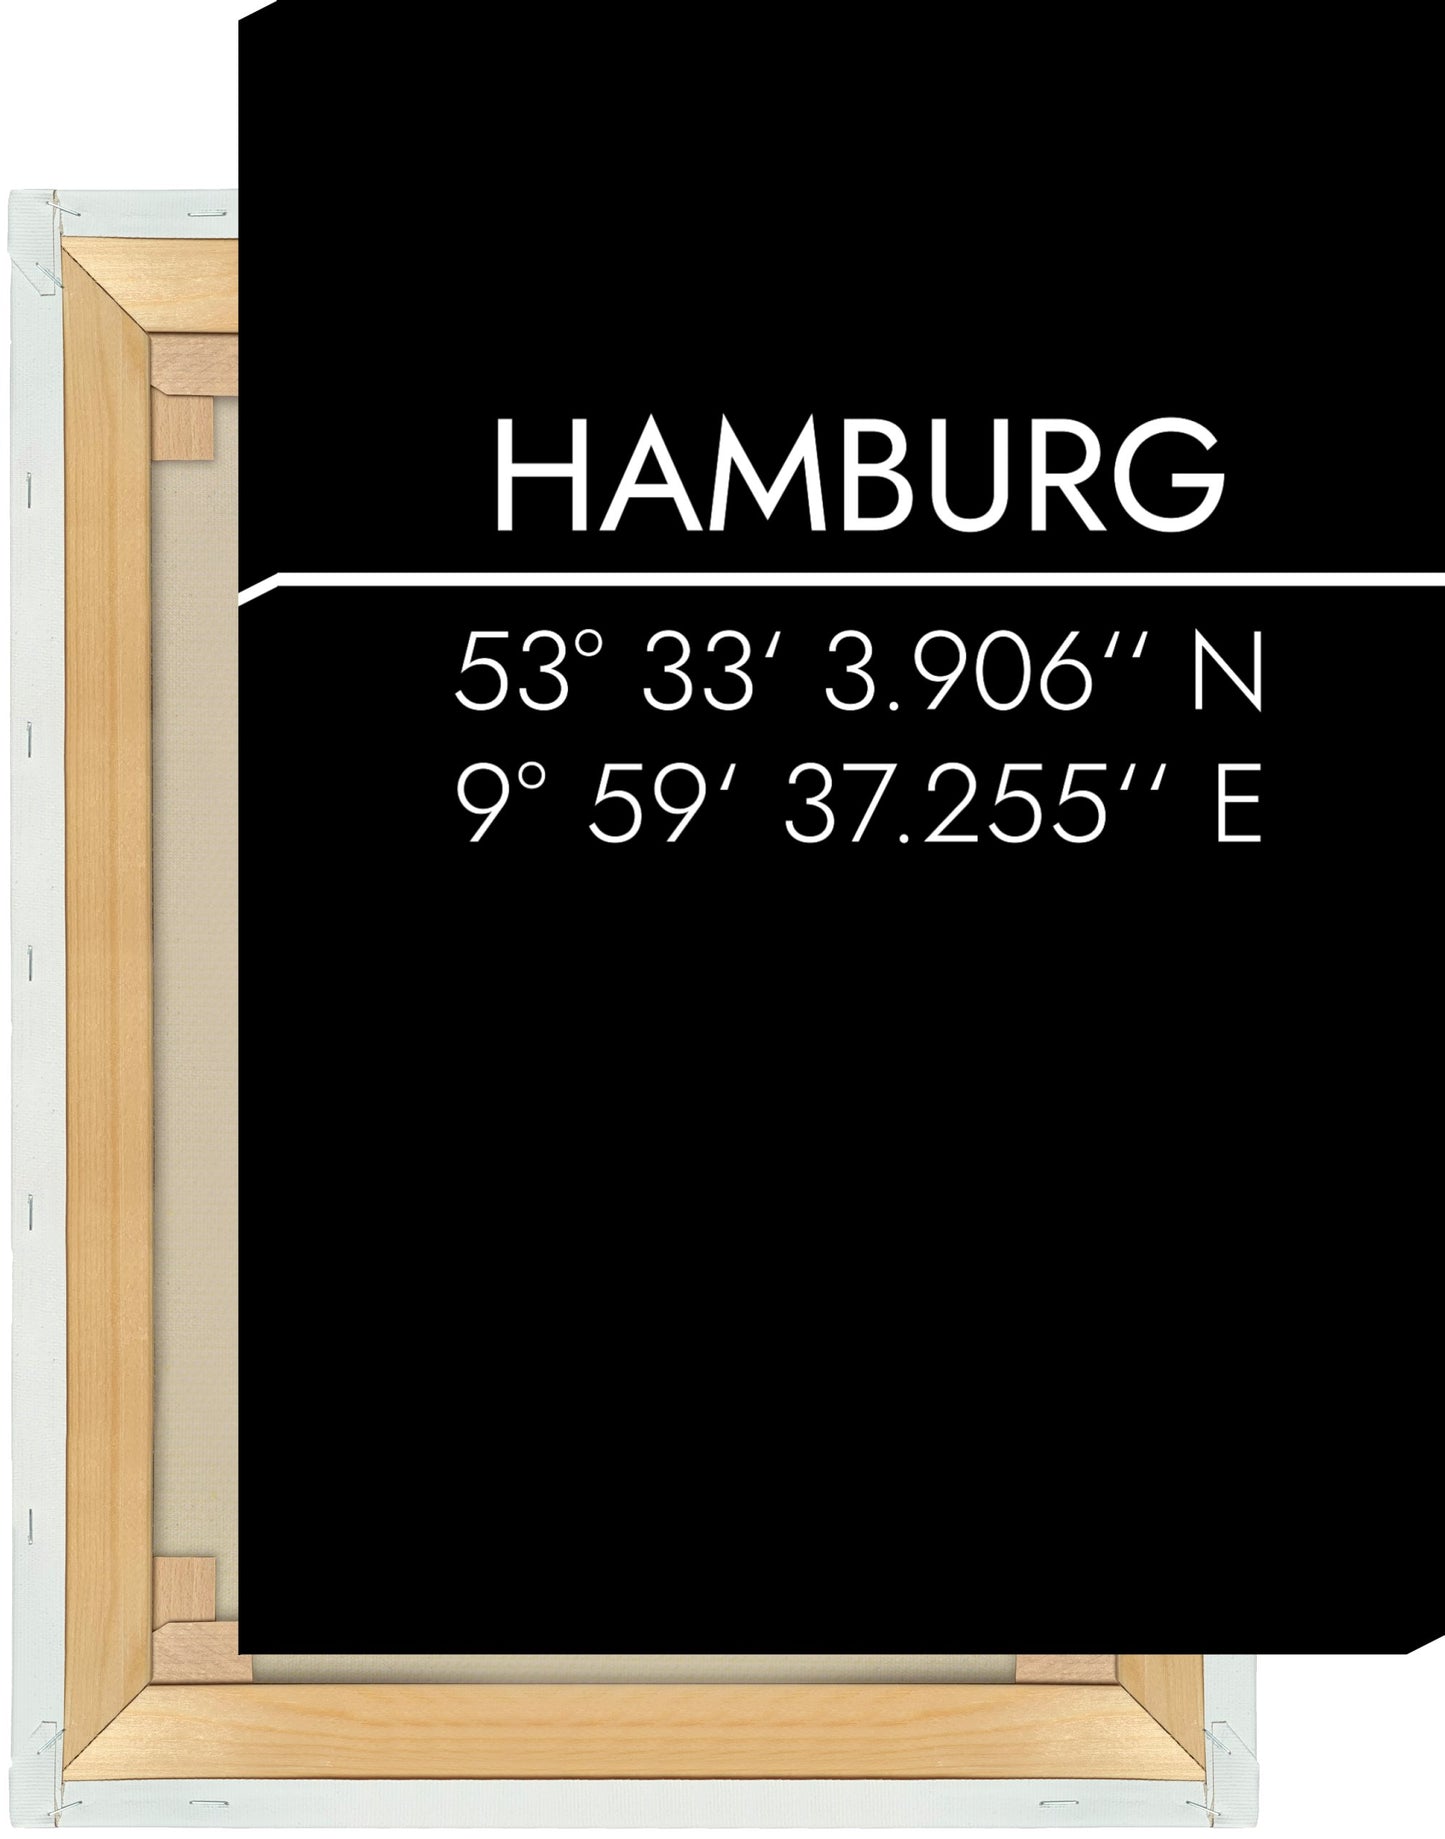 Leinwand Hamburg Koordinaten #2